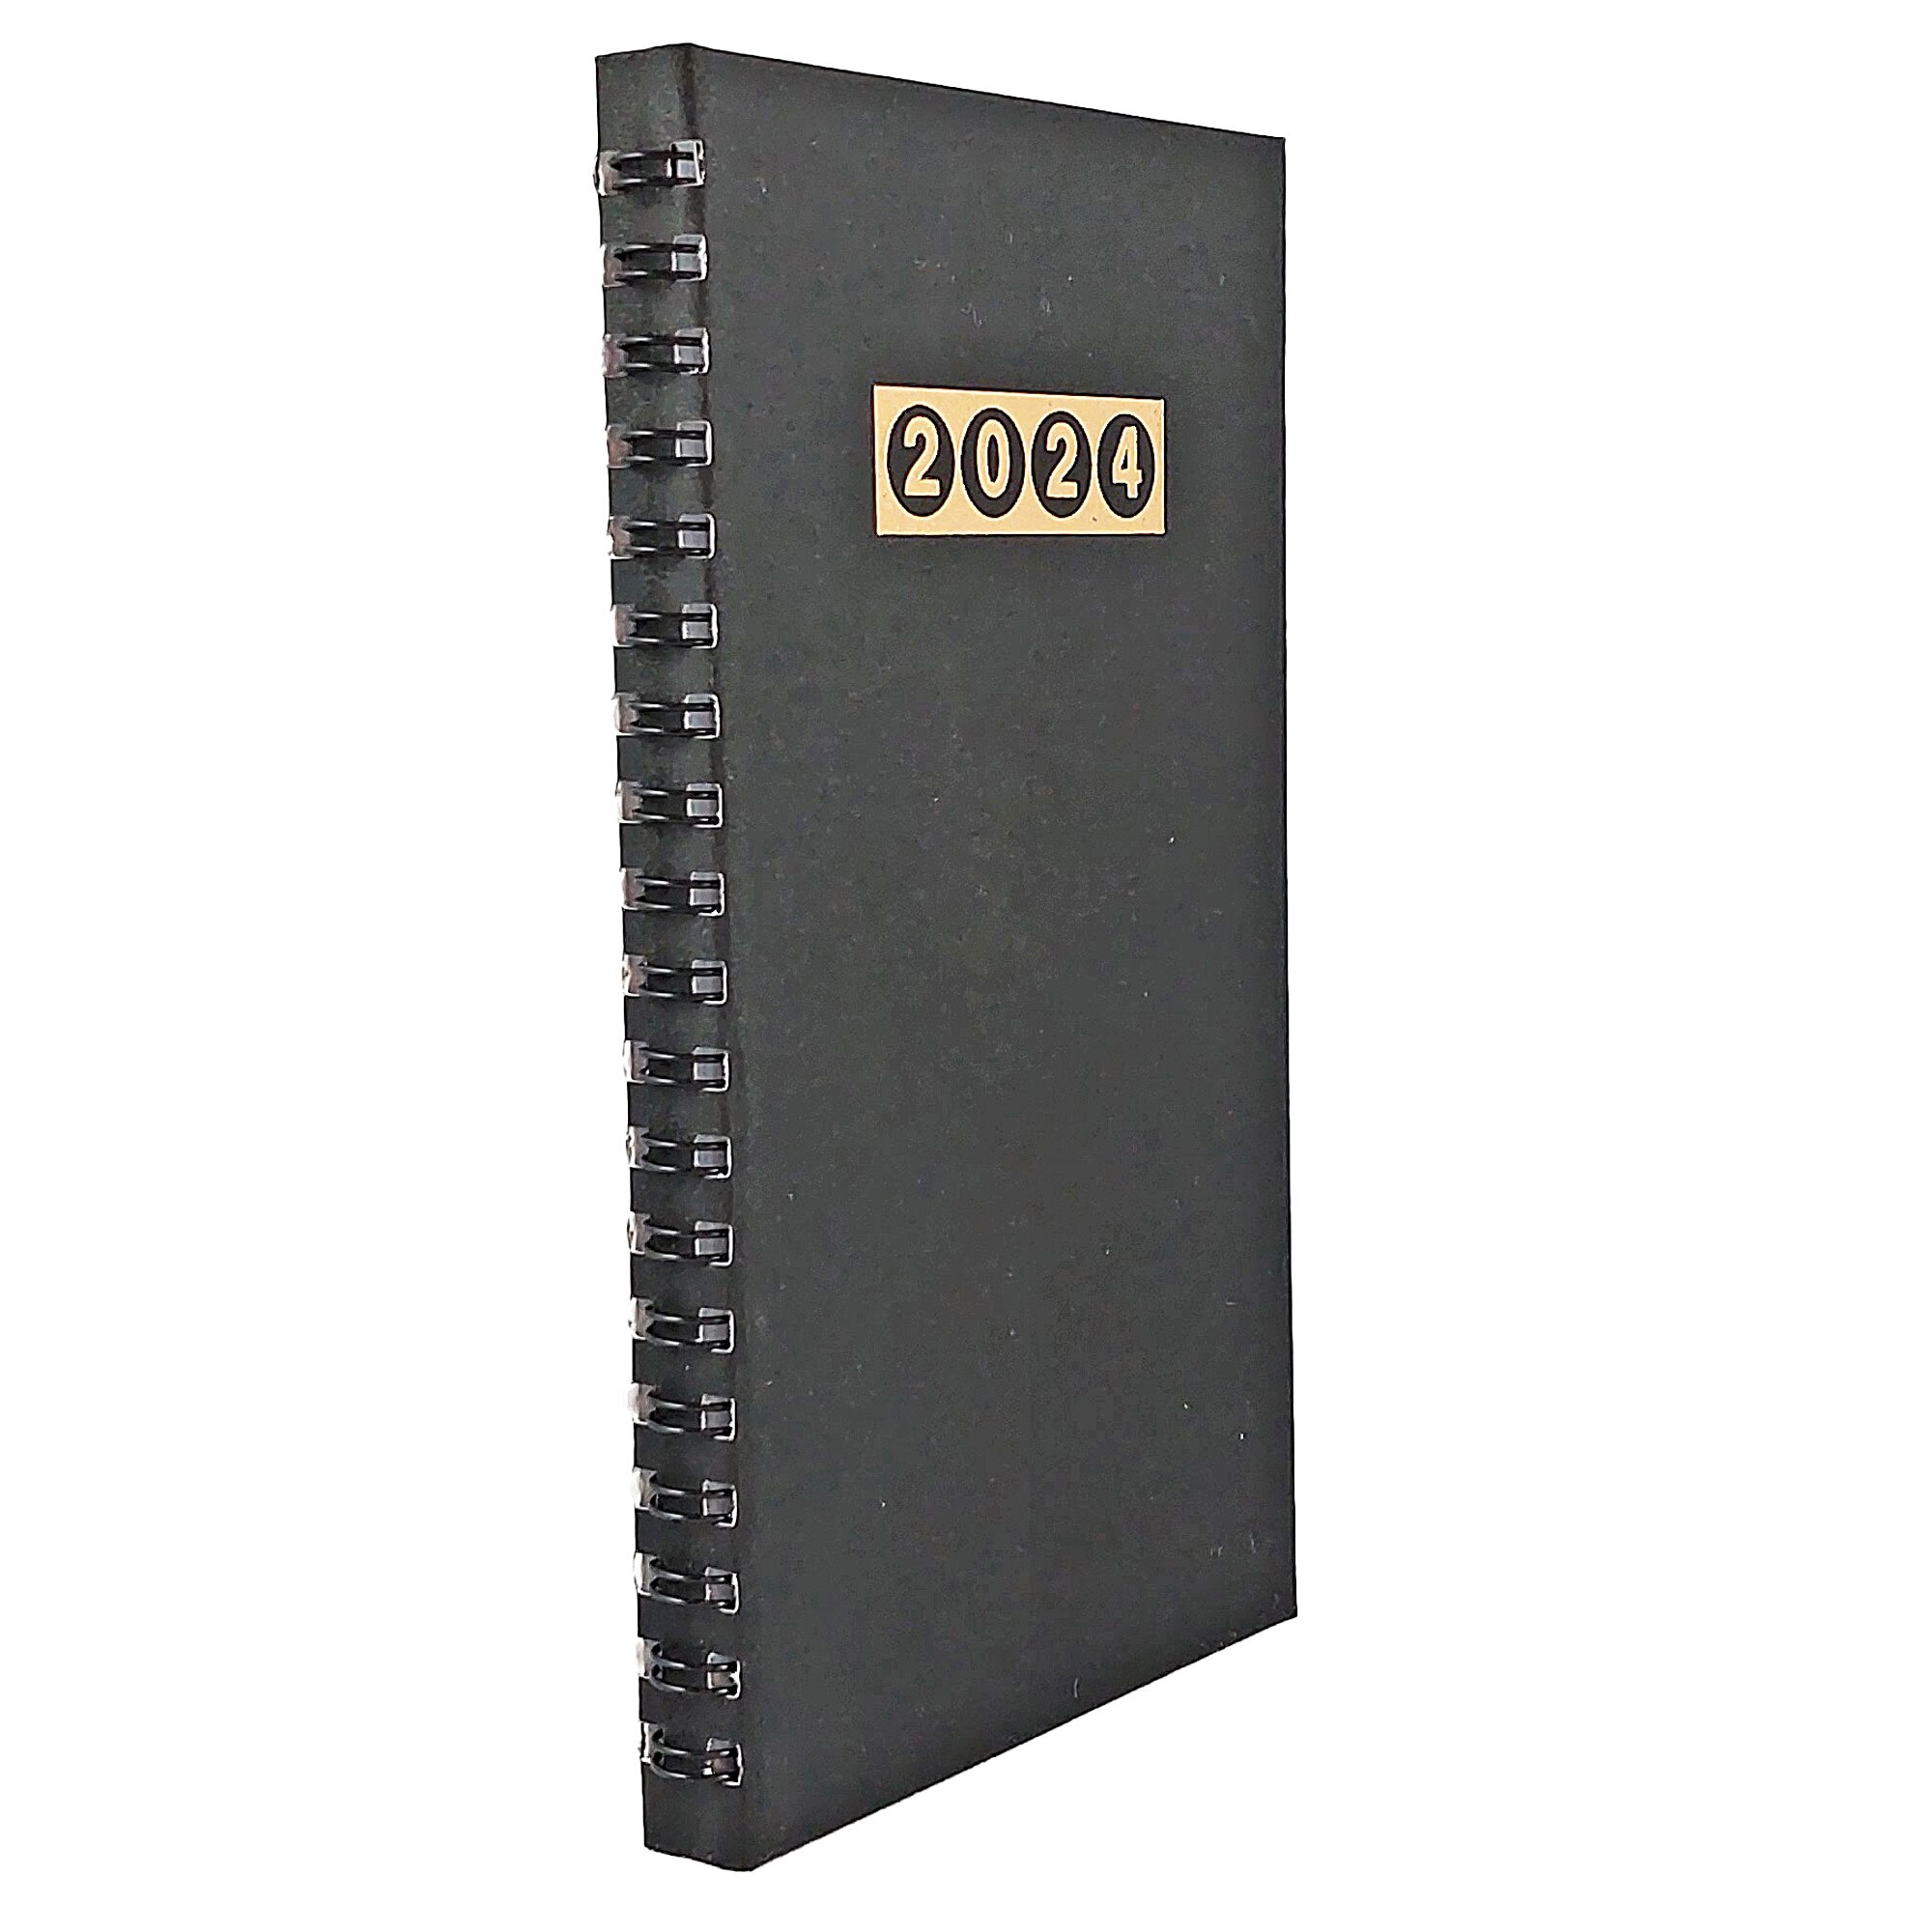 Agenda de buzunar, datata 2024, dimensiuni 9, 5 x 16, 5 cm, 120 pagini, cu  coperta cartonata de culoare negru mat, legata cu spira metalica  semiascunsa 